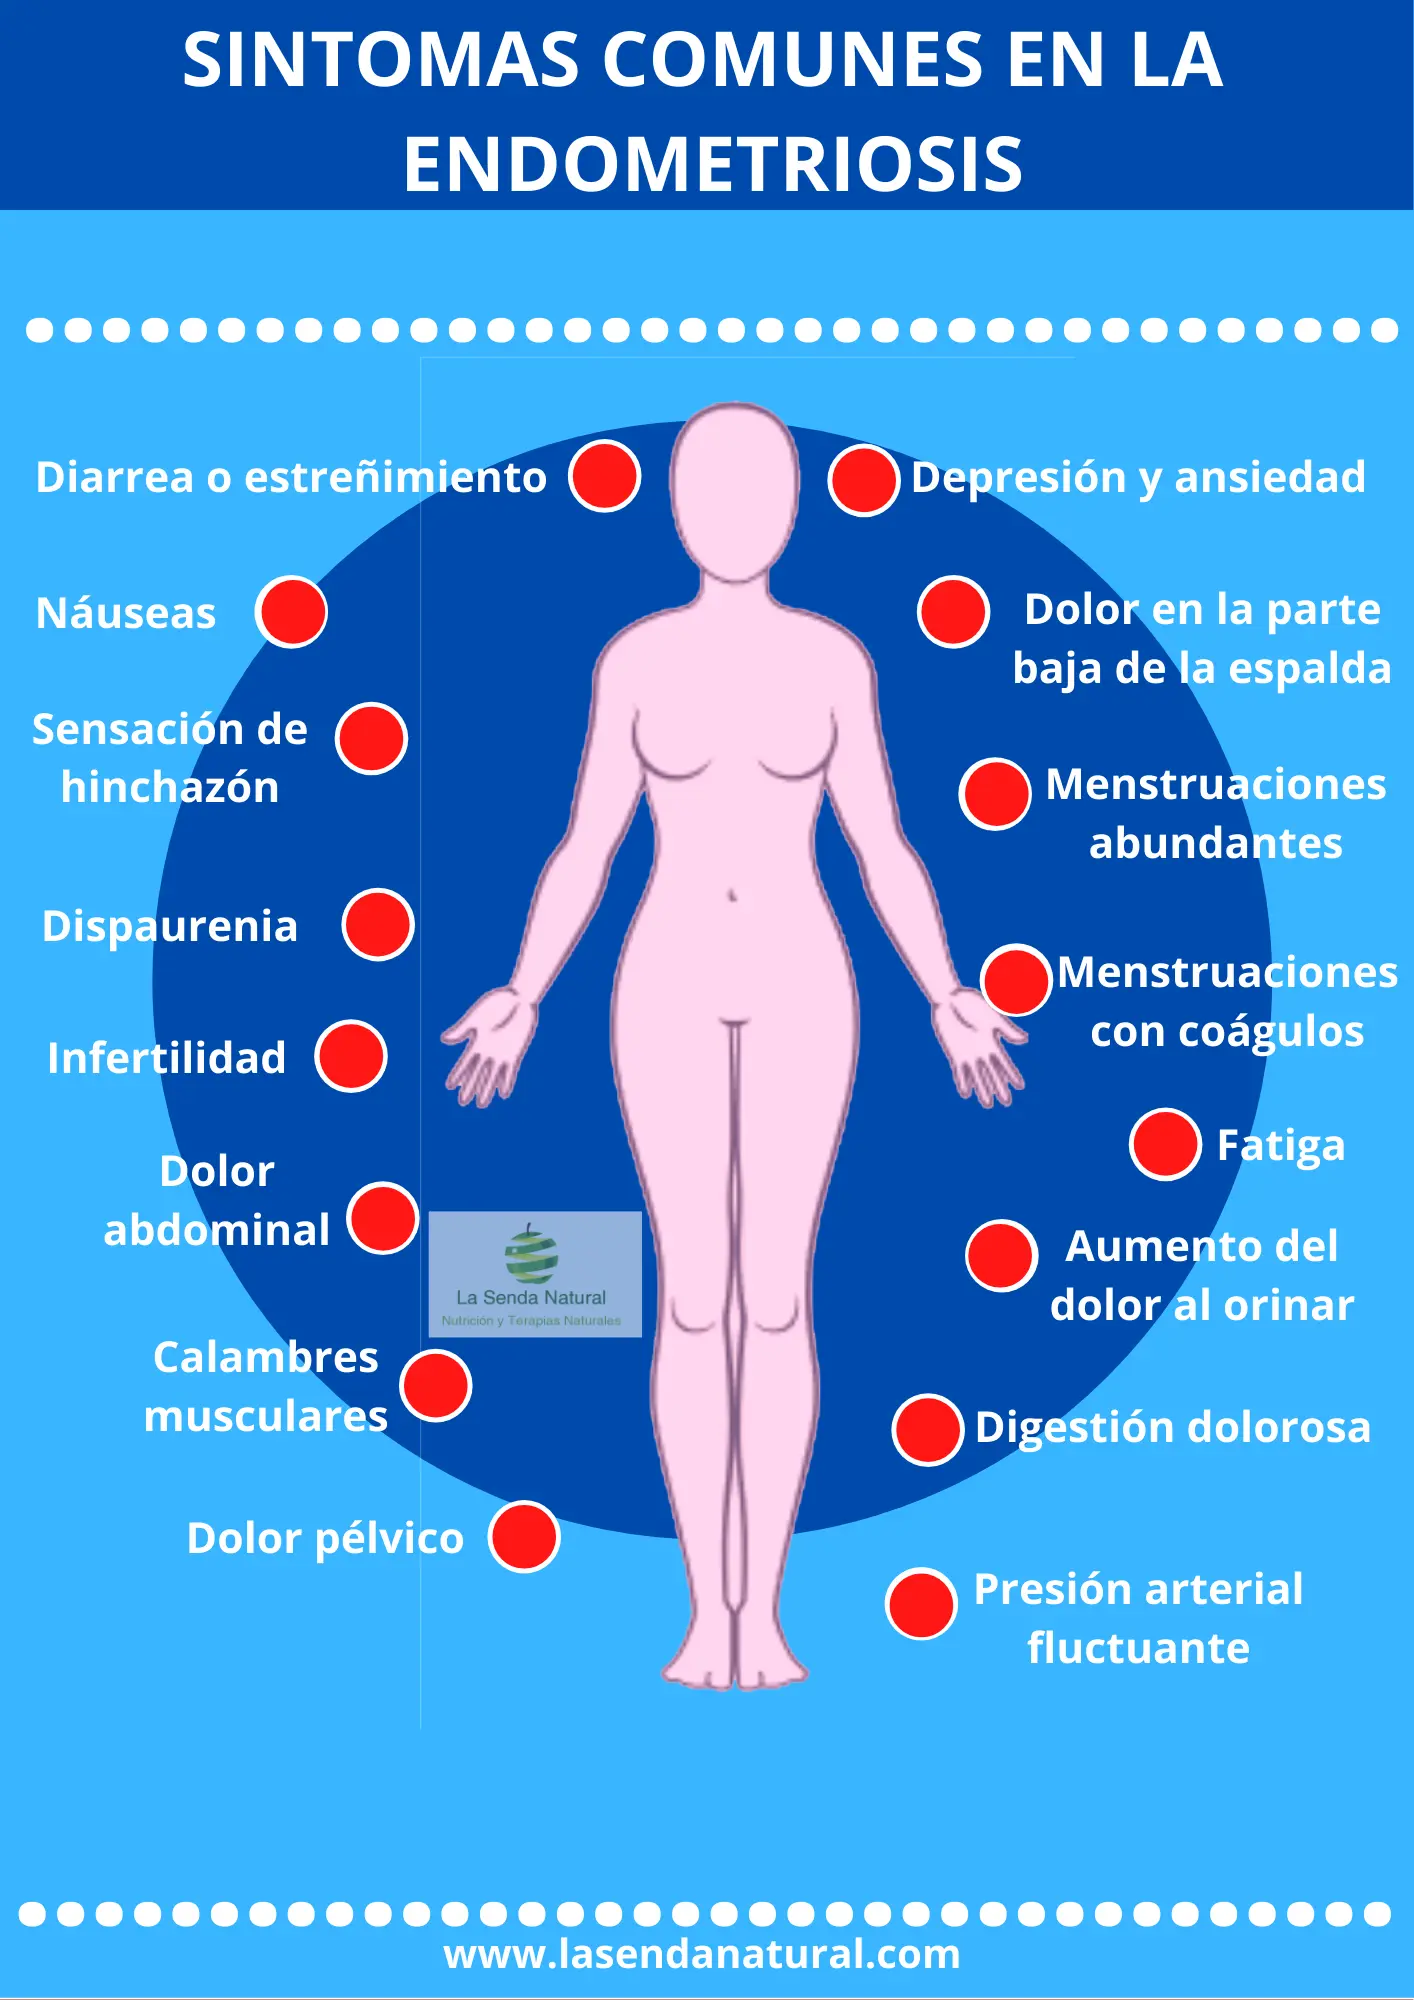 Sintoma comunes de la endometriosis